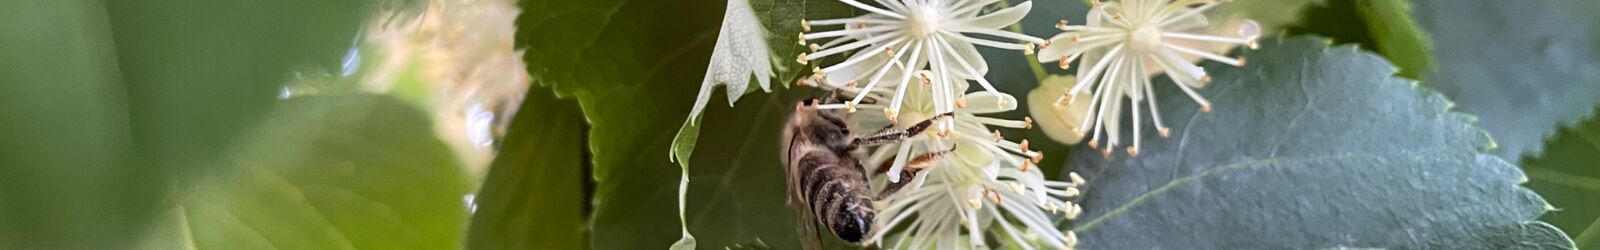 Biene sammelt der Lindenblüte